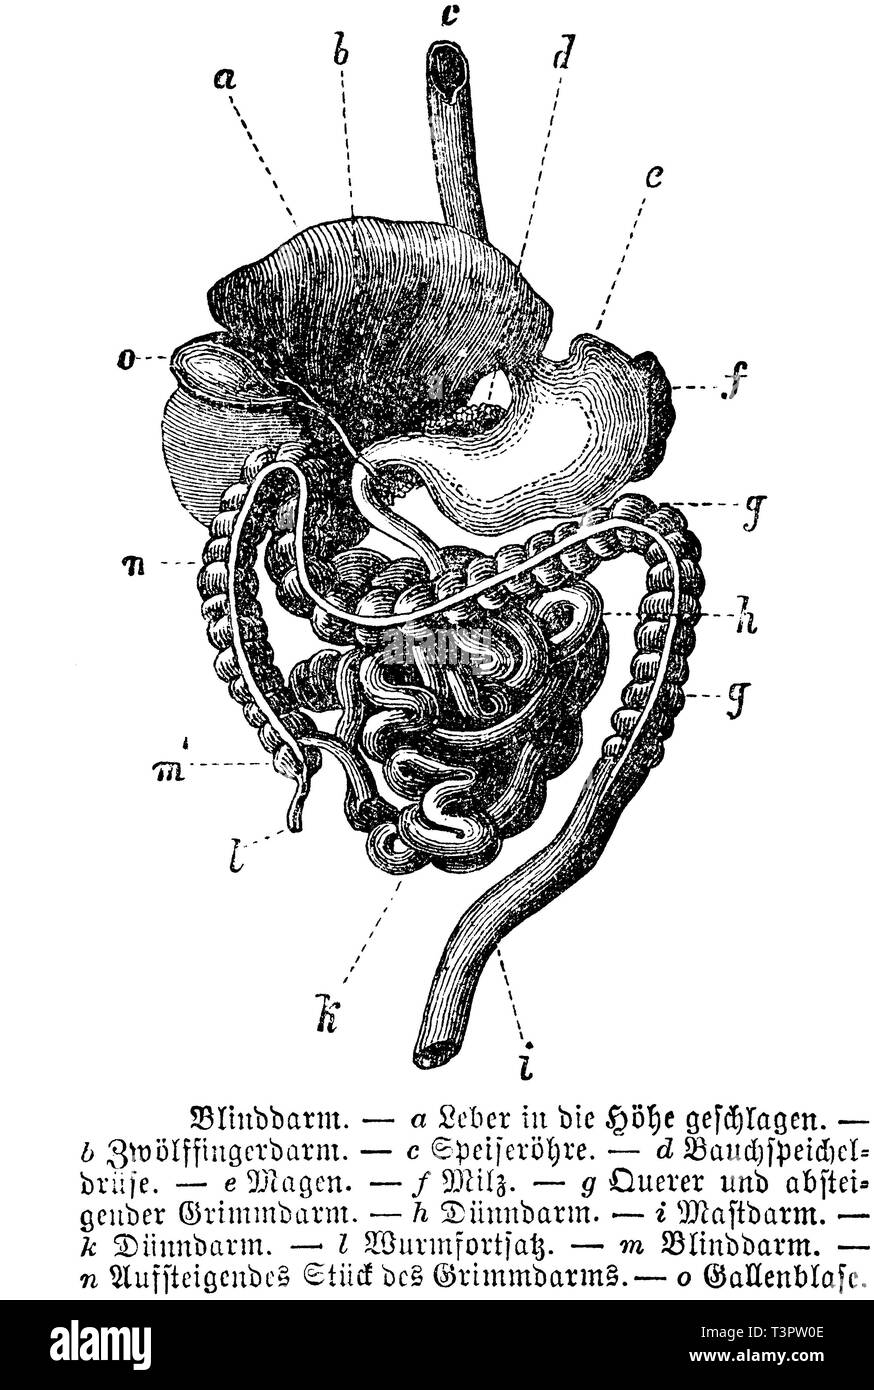 Derechos: Apéndice. a) el hígado, duodeno, b) c) d) el esófago, páncreas, estómago e), f), g), el bazo, el colon transverso y descendente, h), i) del intestino delgado en el recto, el intestino delgado, k), l) y m) del apéndice cecal ; n) pieza del colon ascendente, oh) de la vesícula biliar, anonym 1887 Foto de stock